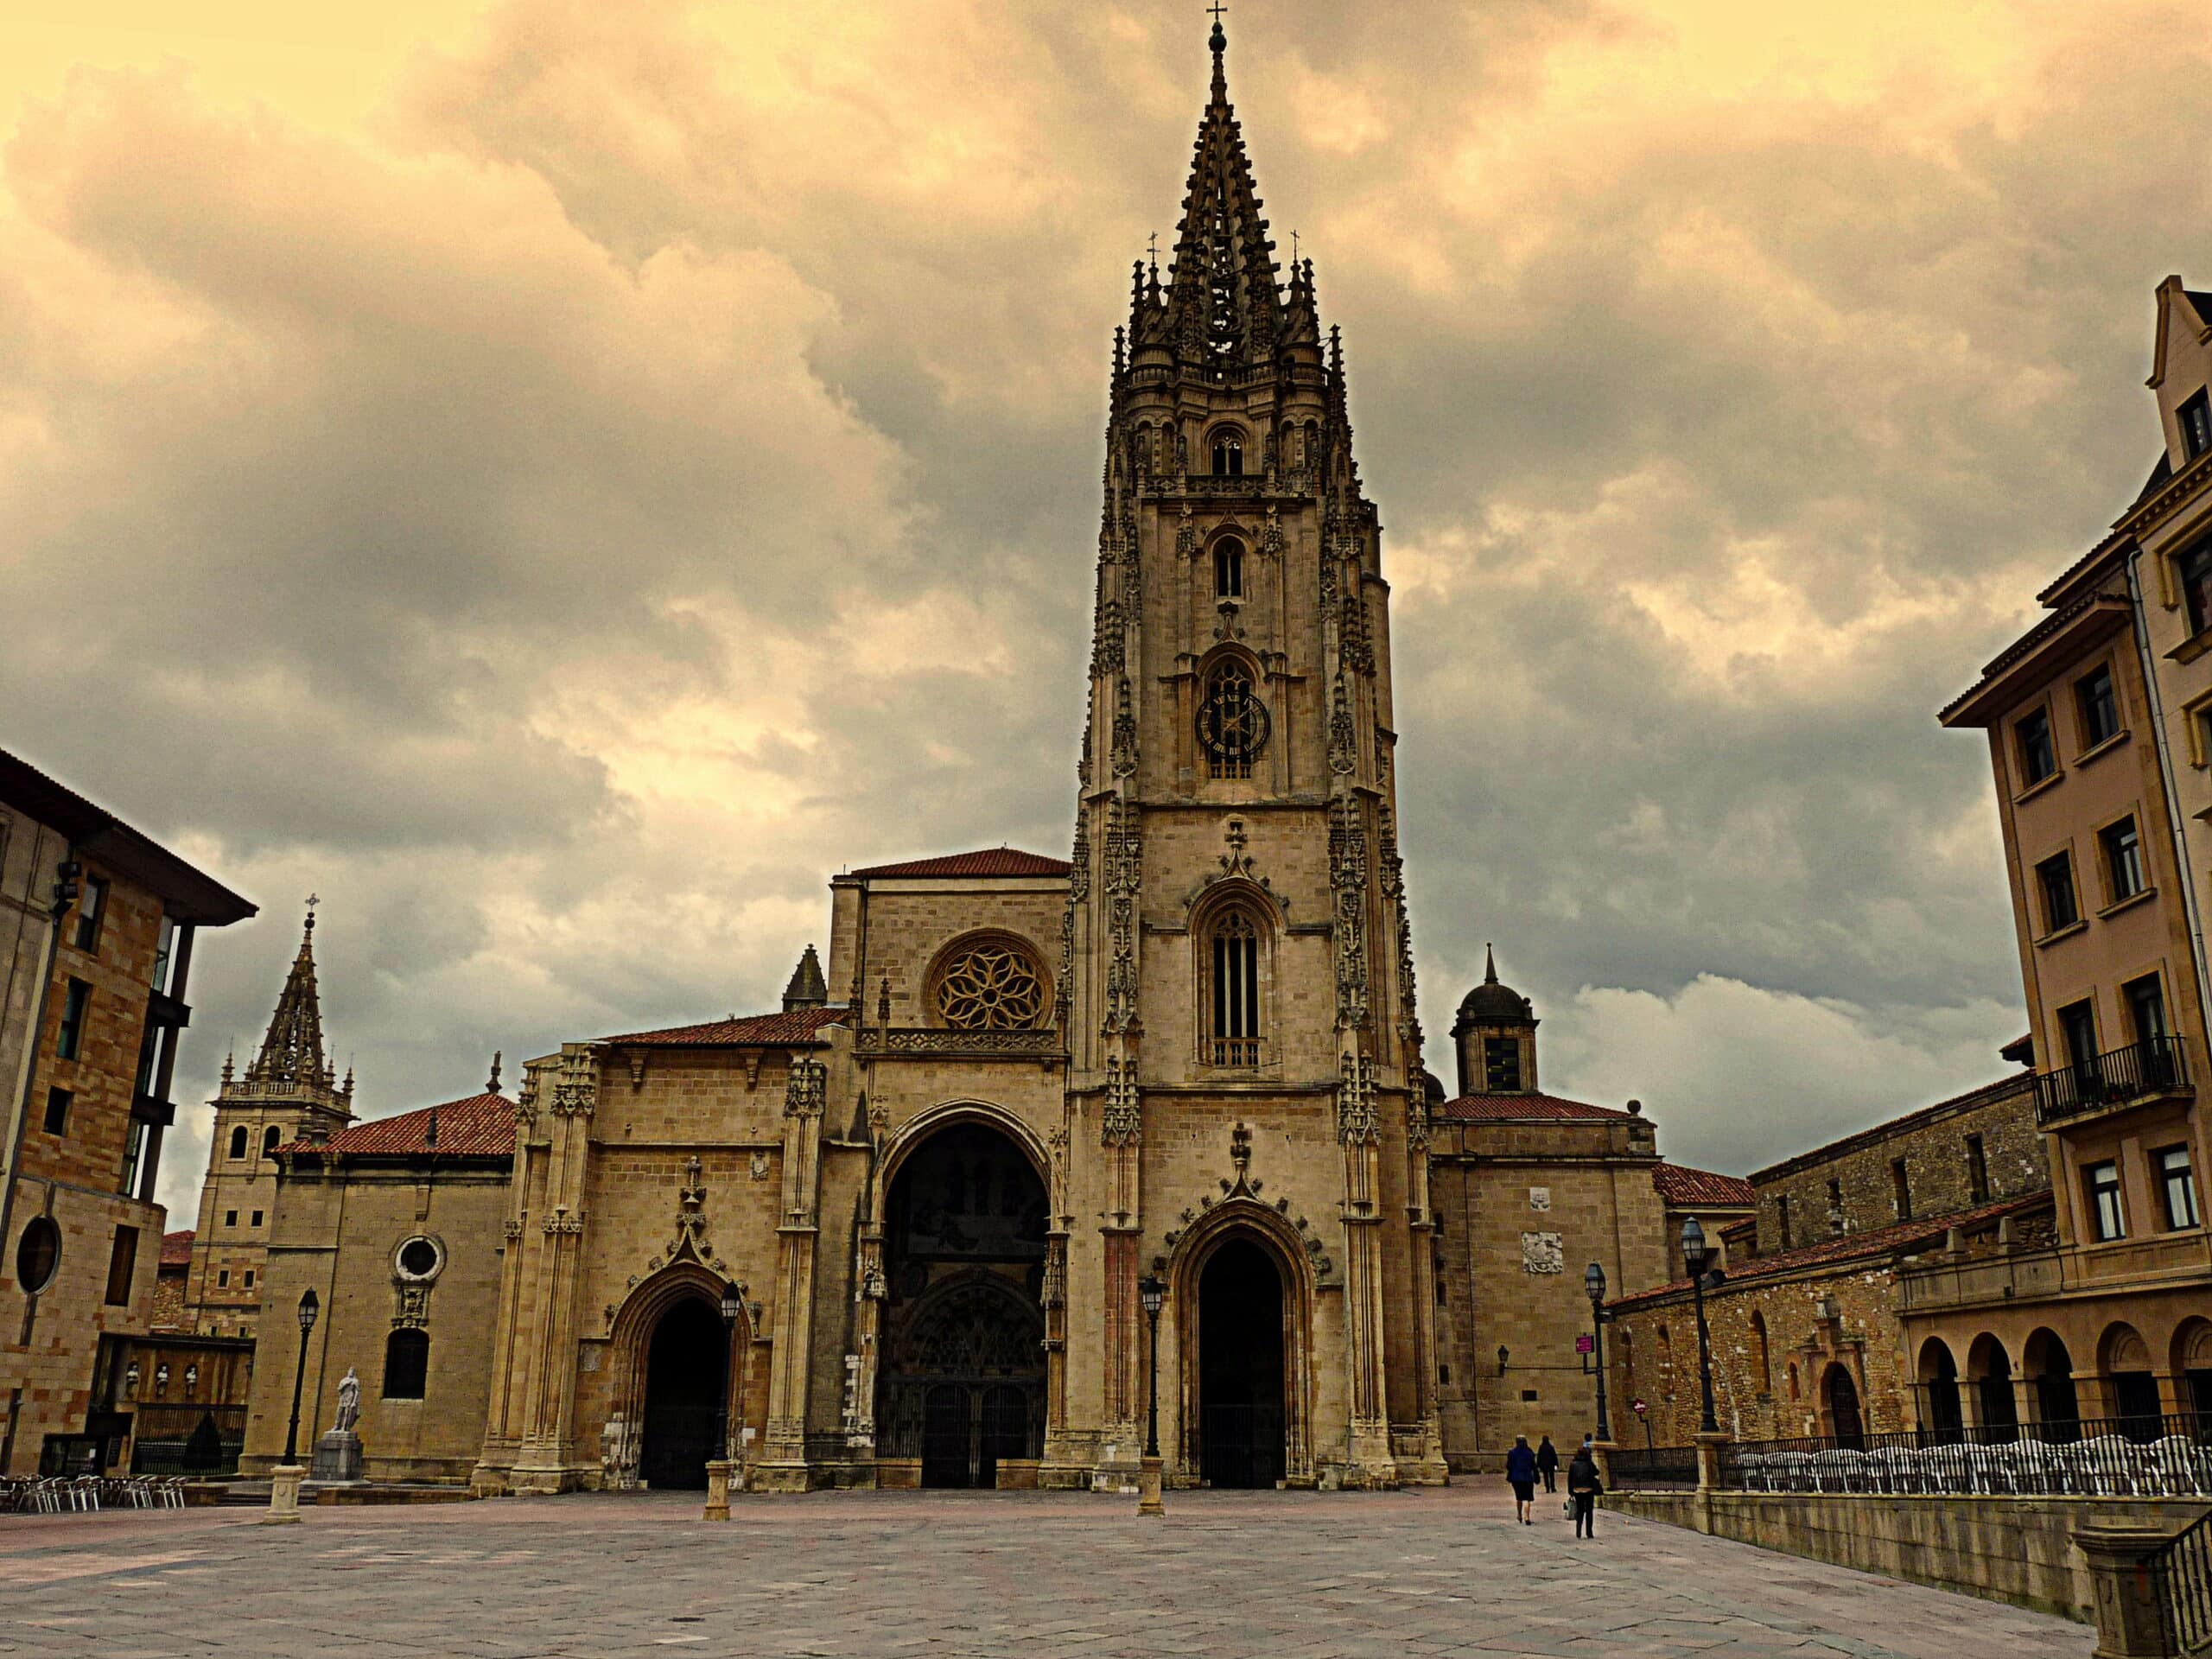 Reemergen reliquias renacentistas: Dos arcones medievales resguardan los santos óleos en la majestuosa Catedral